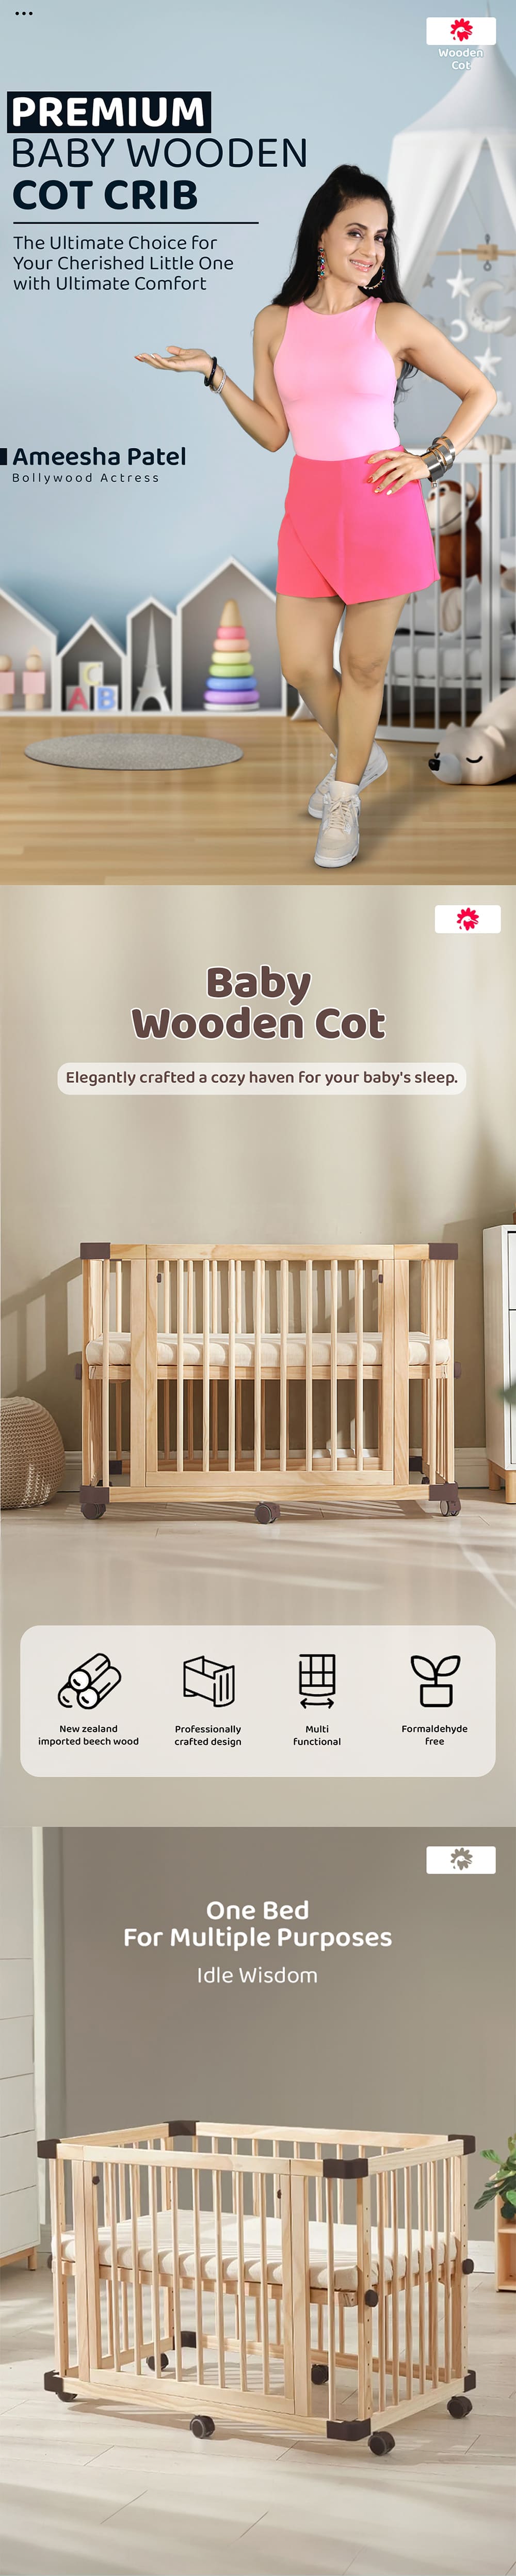 Premium Baby Wooden Cot